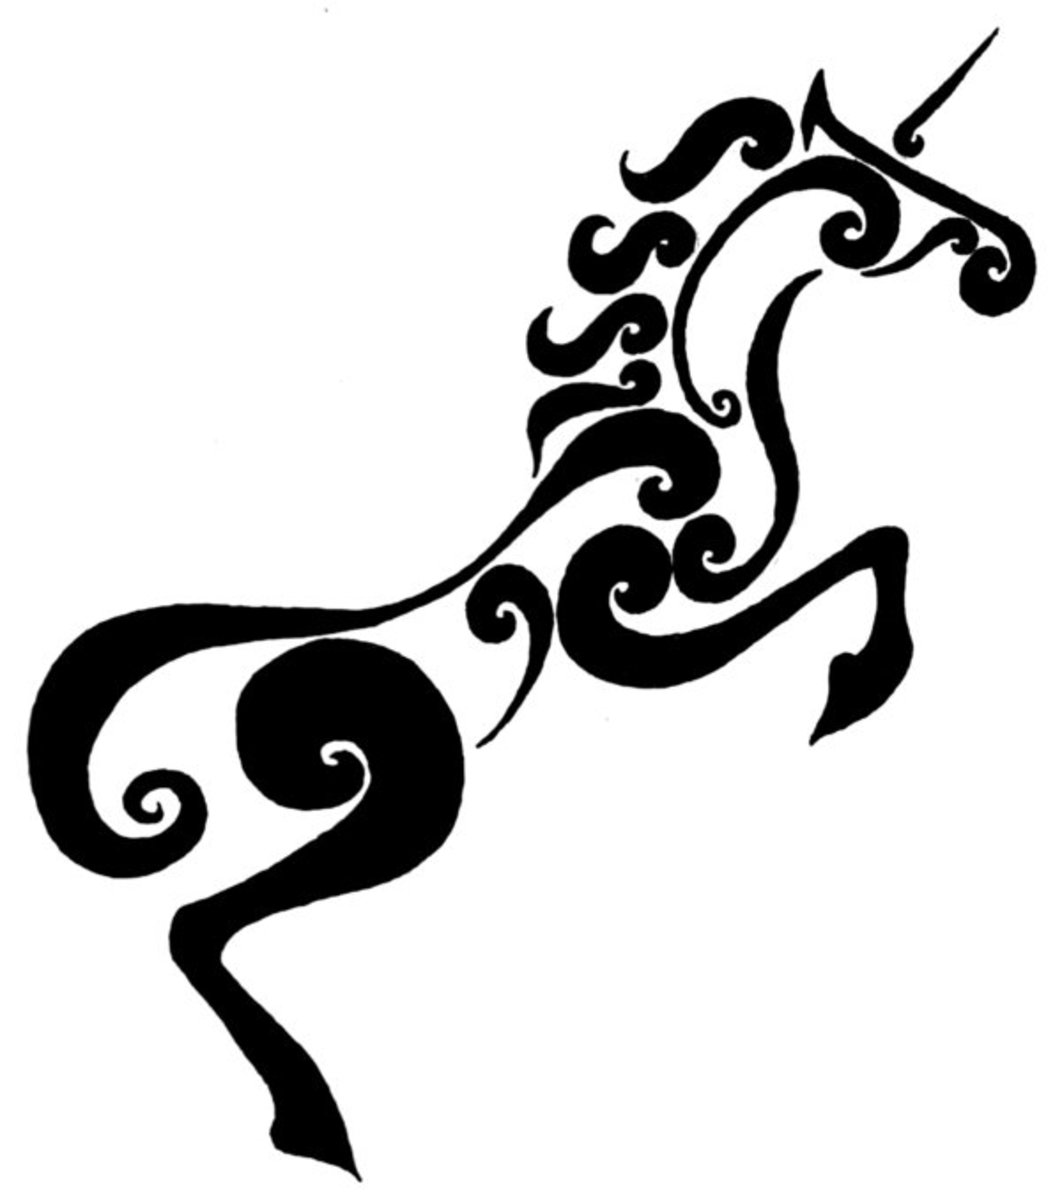 unicorn-tattoo